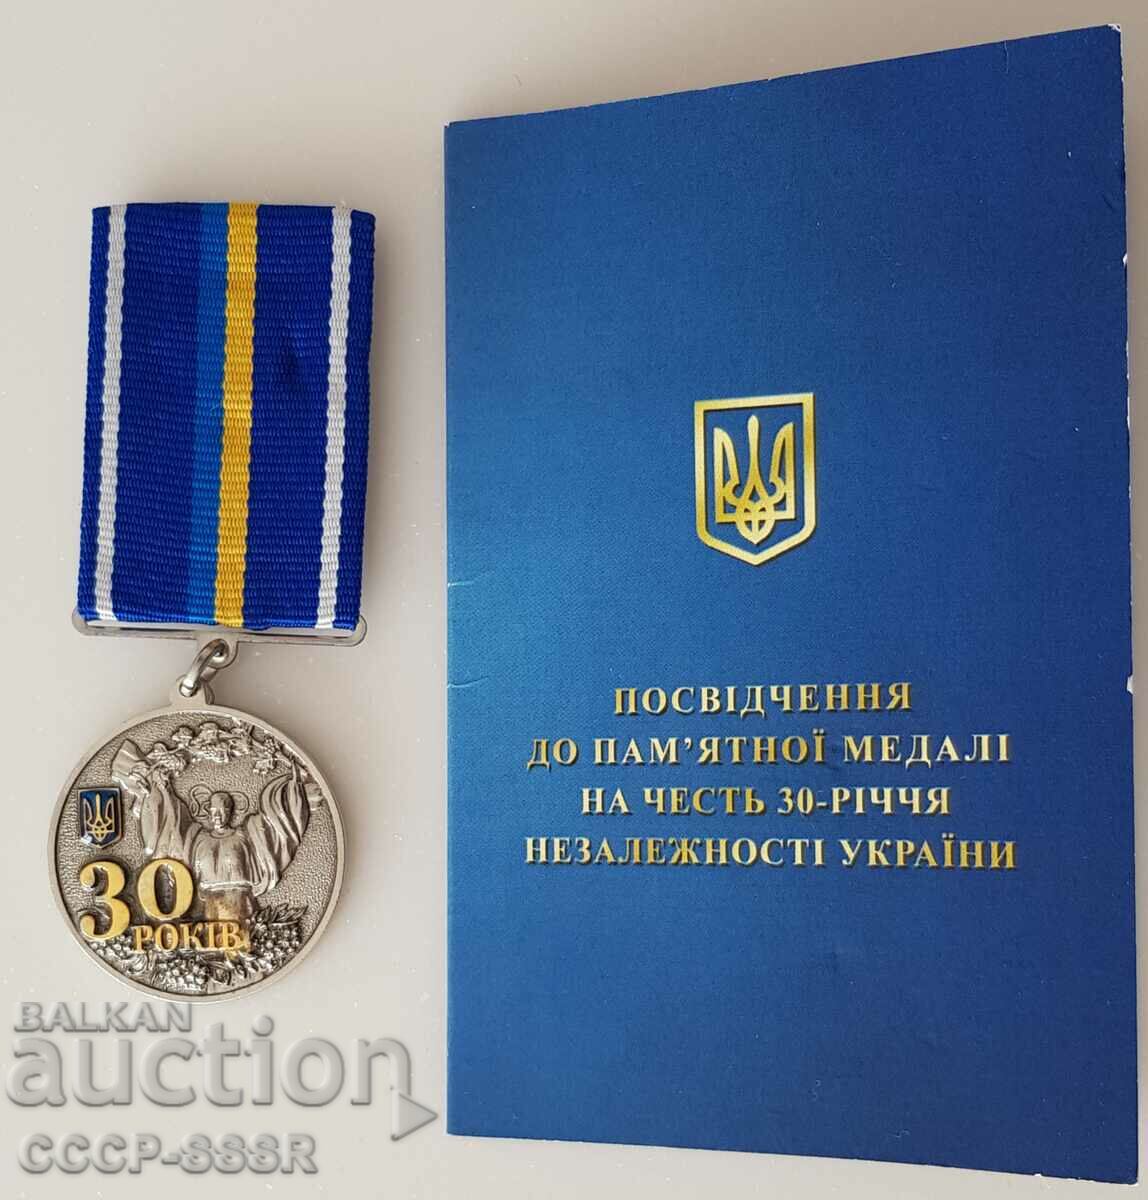 Ουκρανία. Μετάλλιο με έγγραφο "30 χρόνια ανεξαρτησίας"